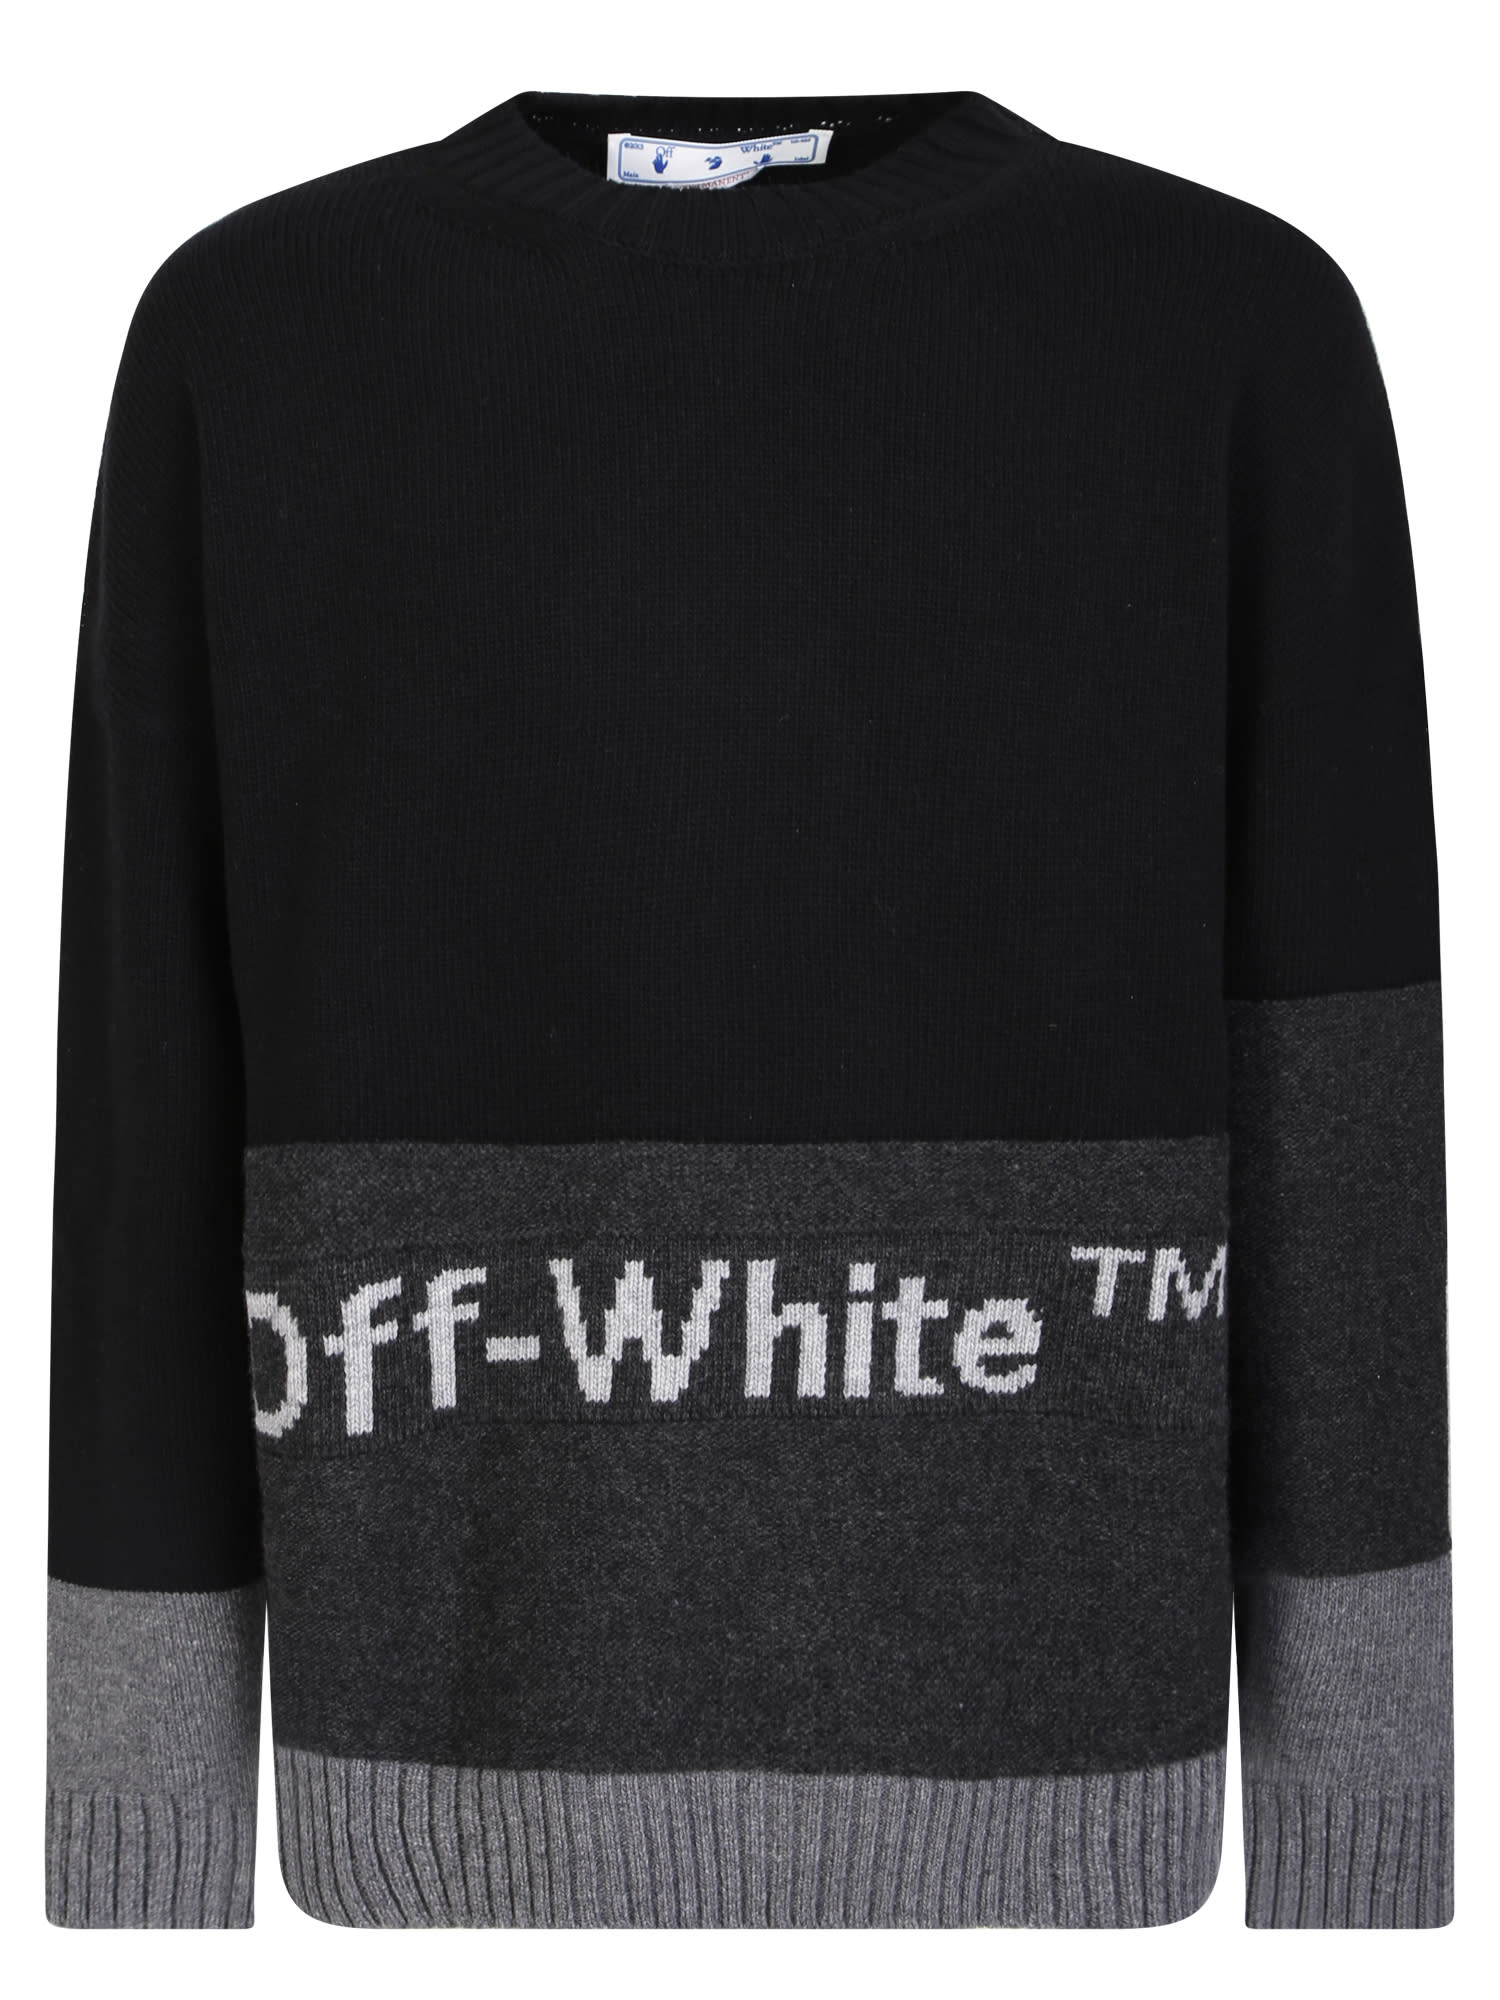 Off-white Logo Intarsia Sweater Black